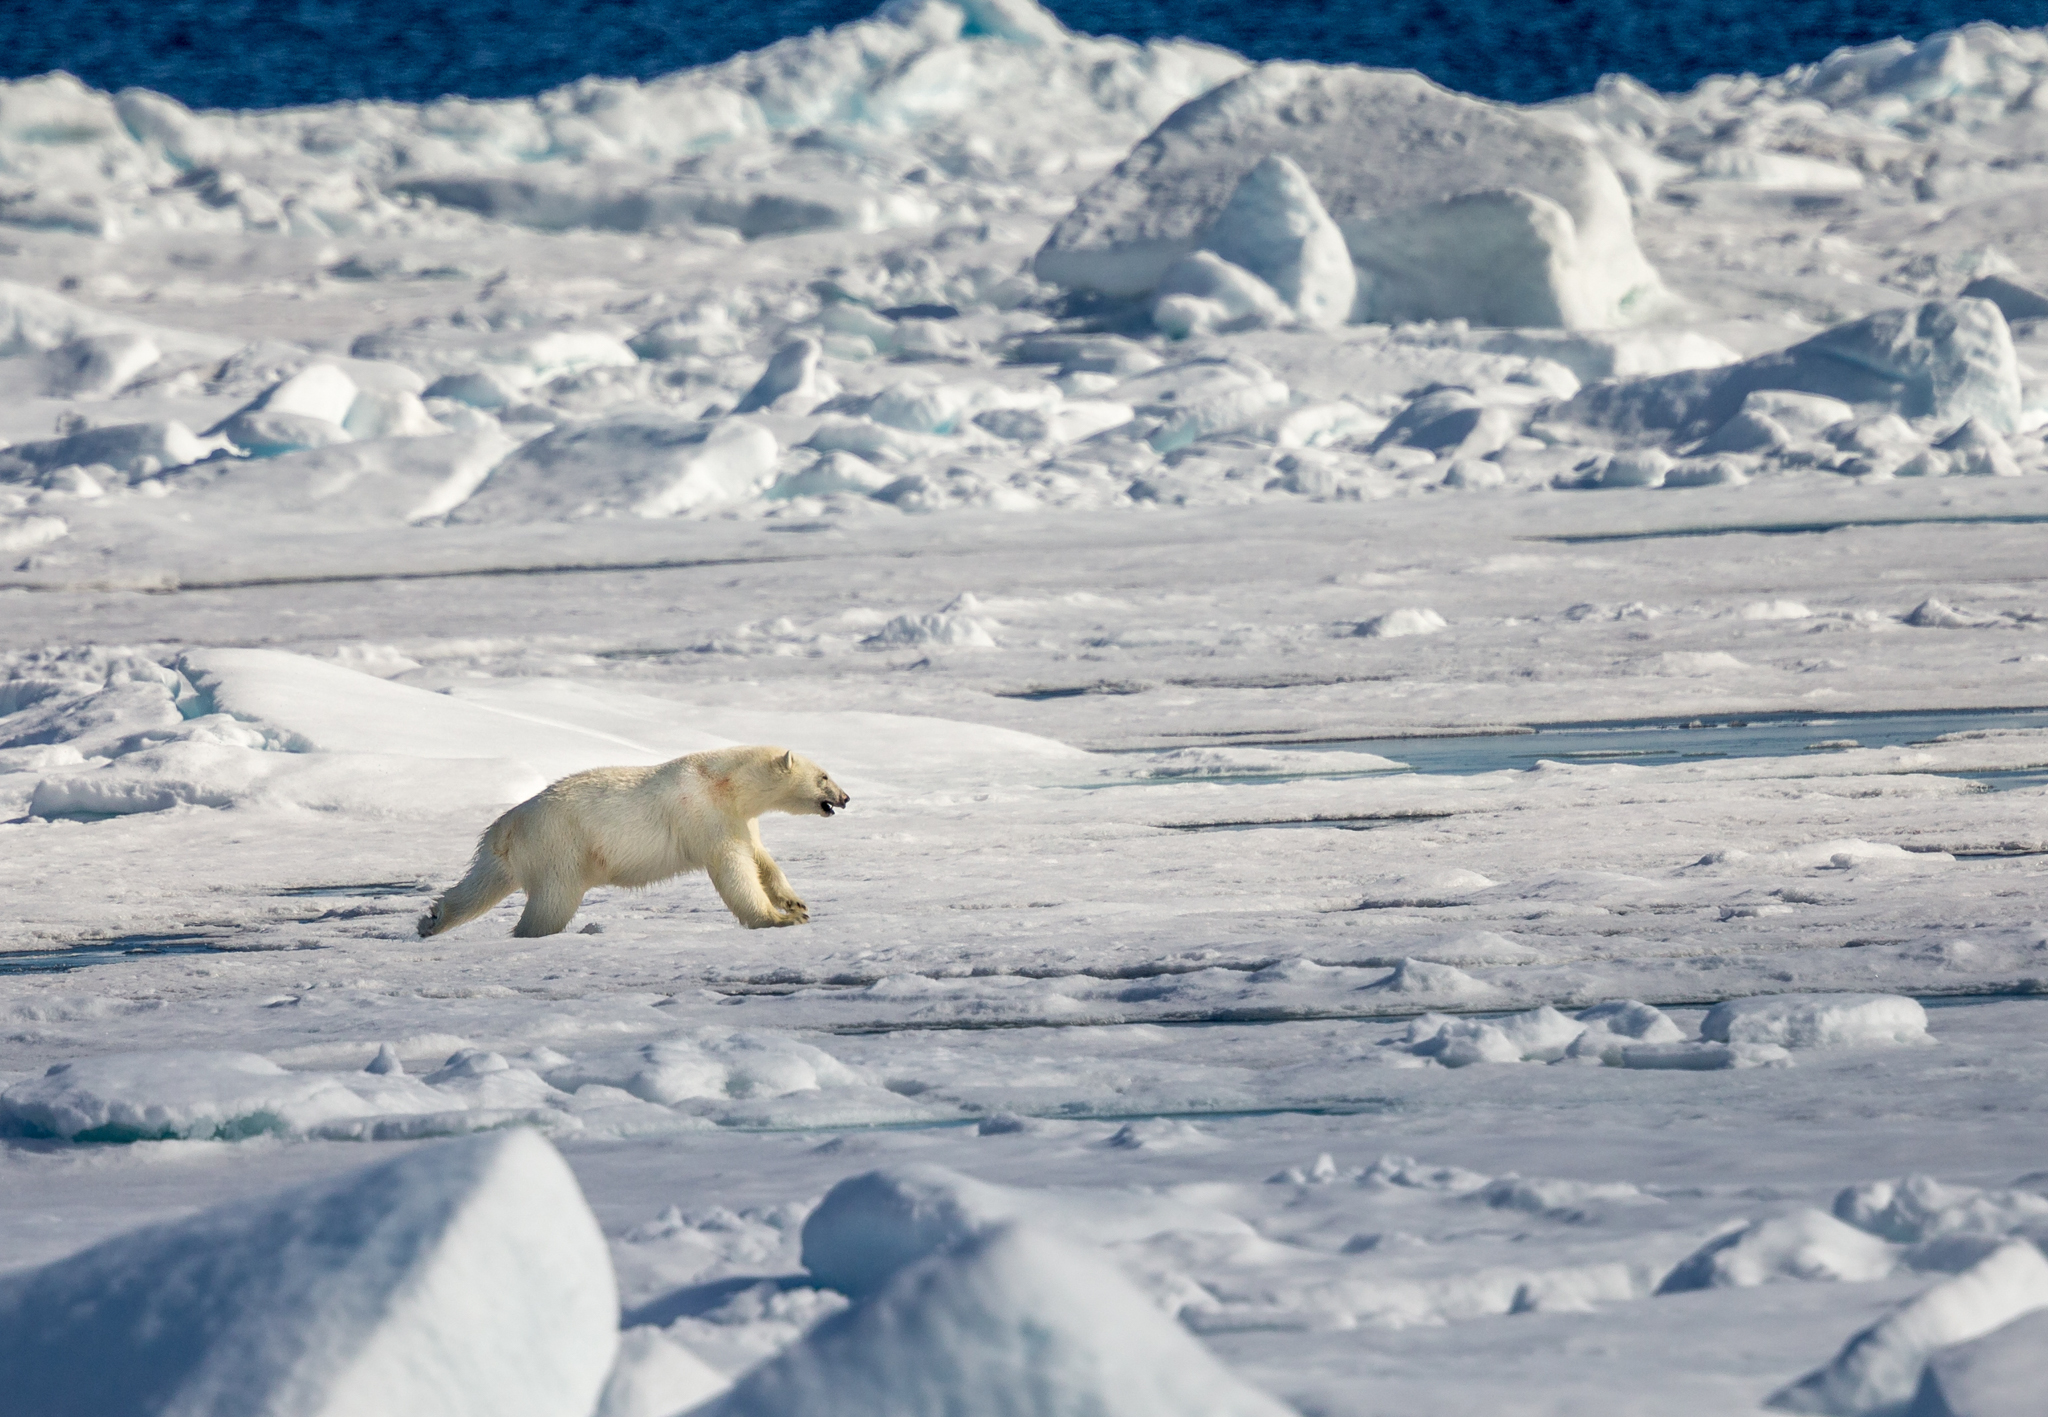 A polar bear runs fast across the ice.